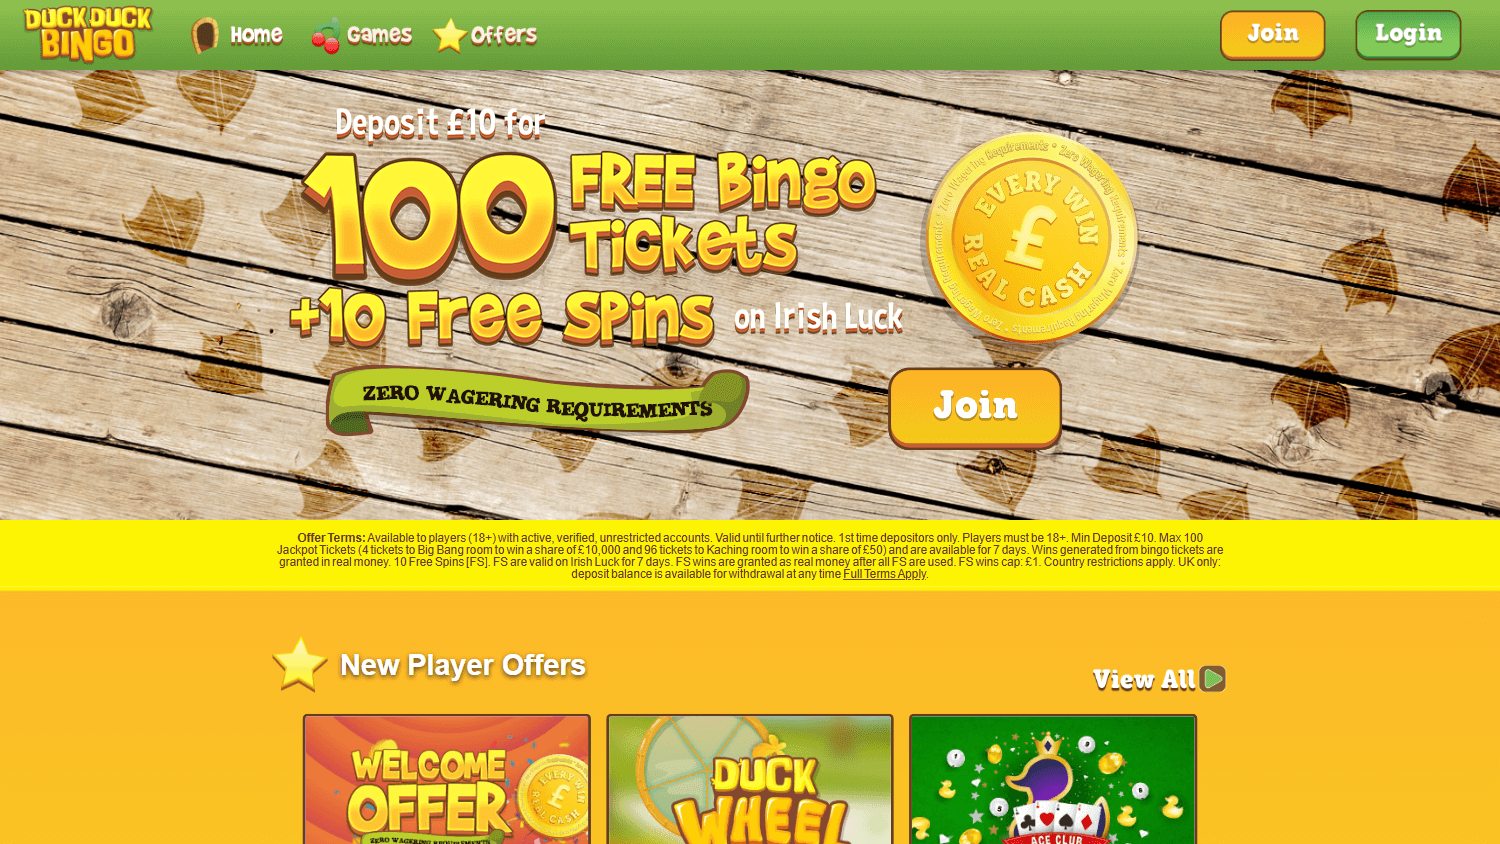 duck_duck_bingo_casino_homepage_desktop